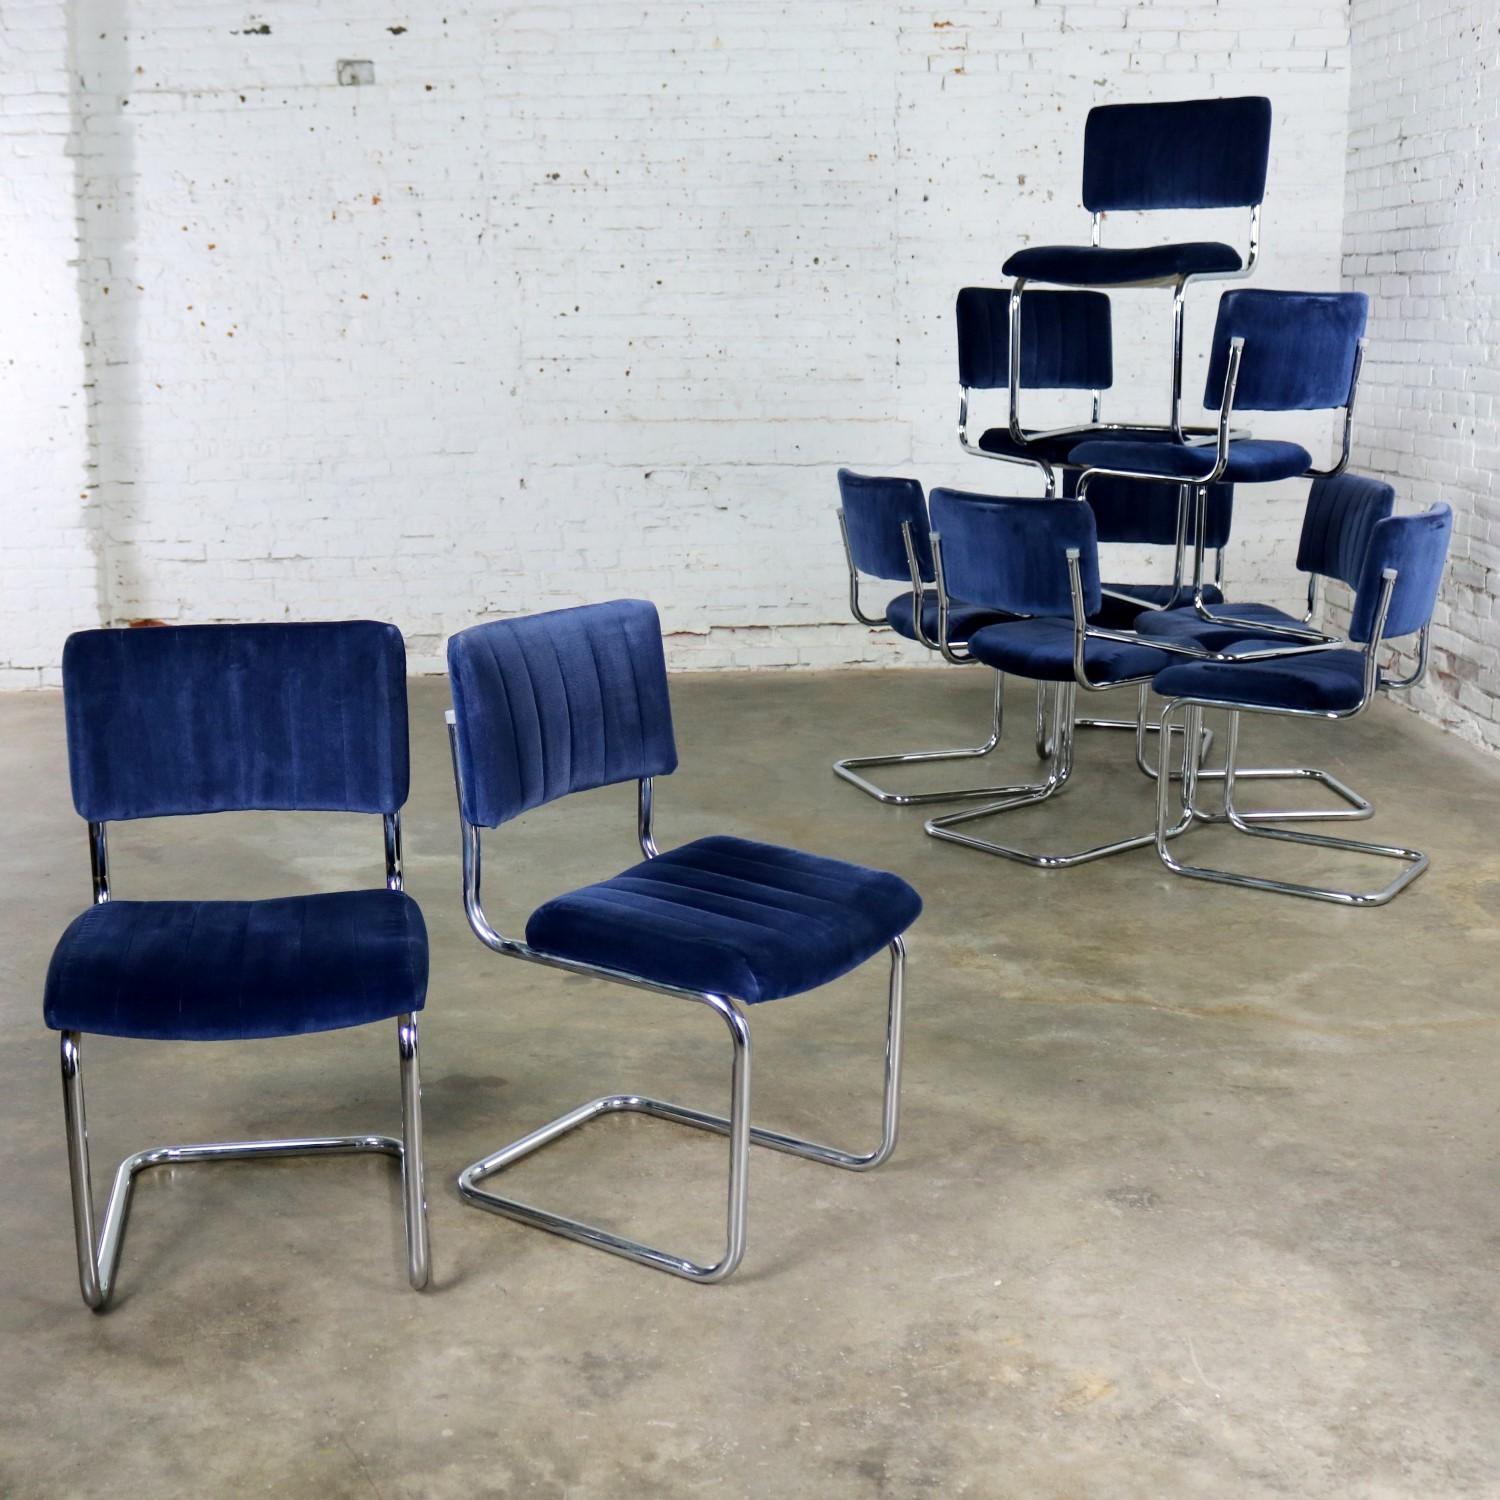 American FOR LISA - 4 Cantilevered Chrome Blue Velvet Dining Chairs Marcel Breuer Cesca